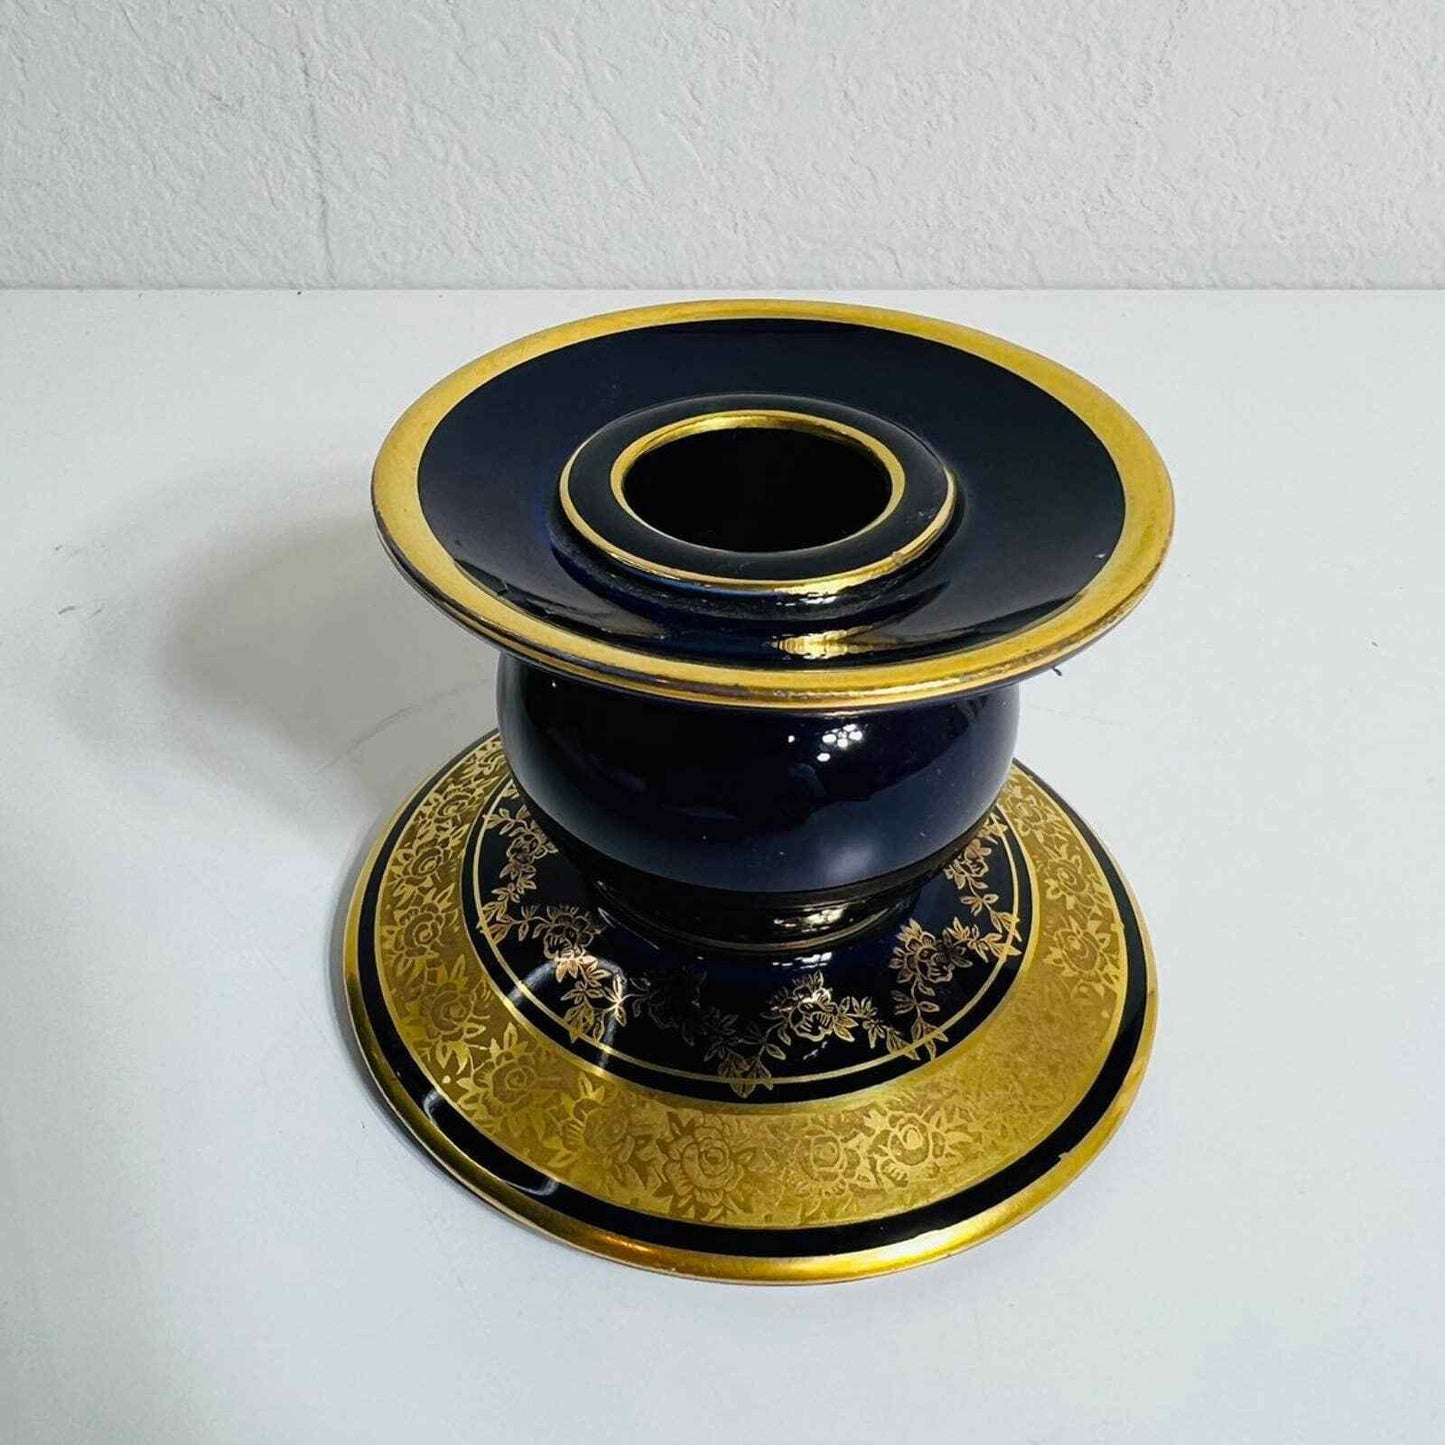 Lindner Kueps Vase Candle Holder Bavaria Blue Cobalt Set Germany Home Decor